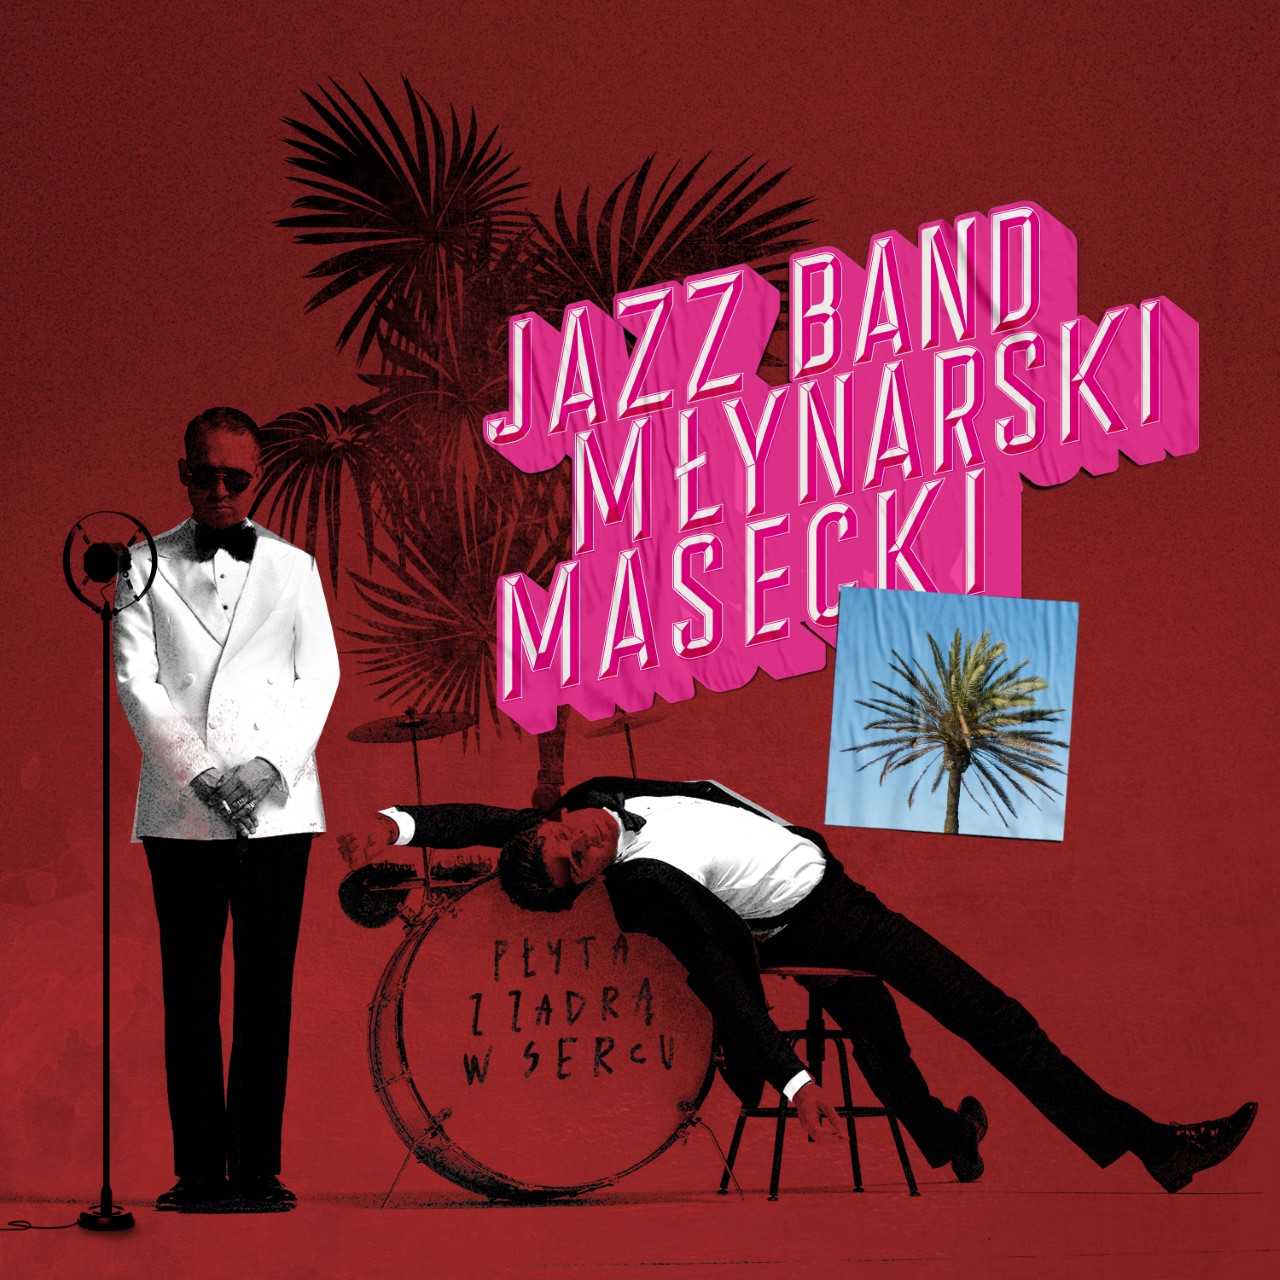 Jazz Band Mlynarski Masecki - Płyta z zadrą w sercu